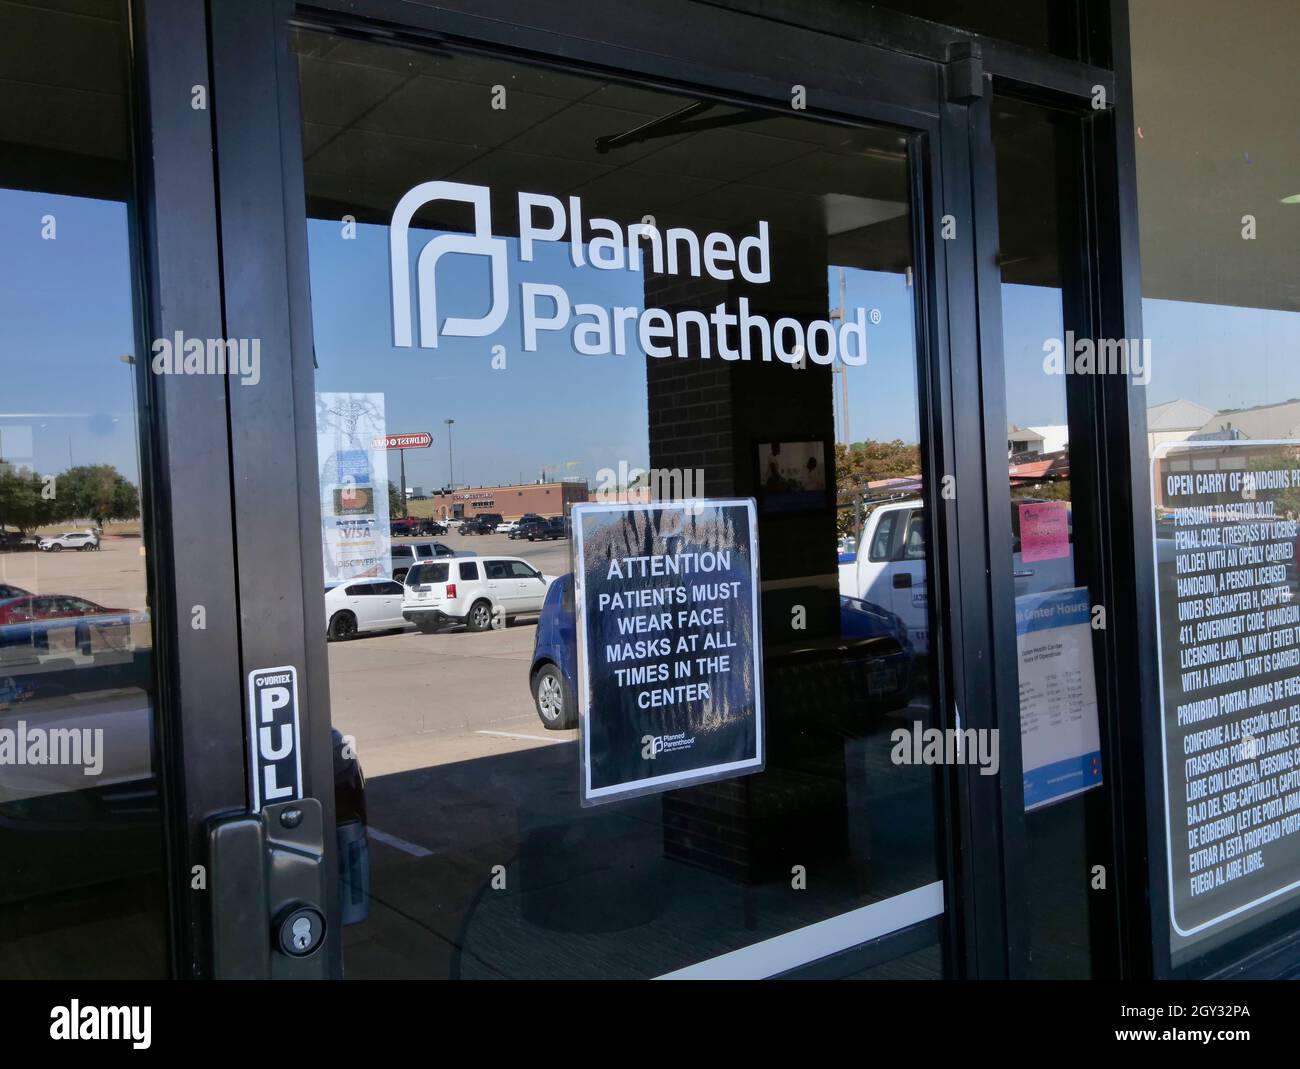 Die geplante Parenthood Clinis im Einkaufszentrum entlang der I-35E in Denton, Texas, wird von der Gebetsvigil „40 Days for Life“ angepickelt. Die Residenz in Texas begann am 16. September mit ihren Protesten und wird bis Ende Oktober protestieren. Vierzig Tage. Anti-Abtreibungsaktivist Sie glauben, dass der Texas Govenor Abbott ein wunderbarer Mann ist. Stockfoto